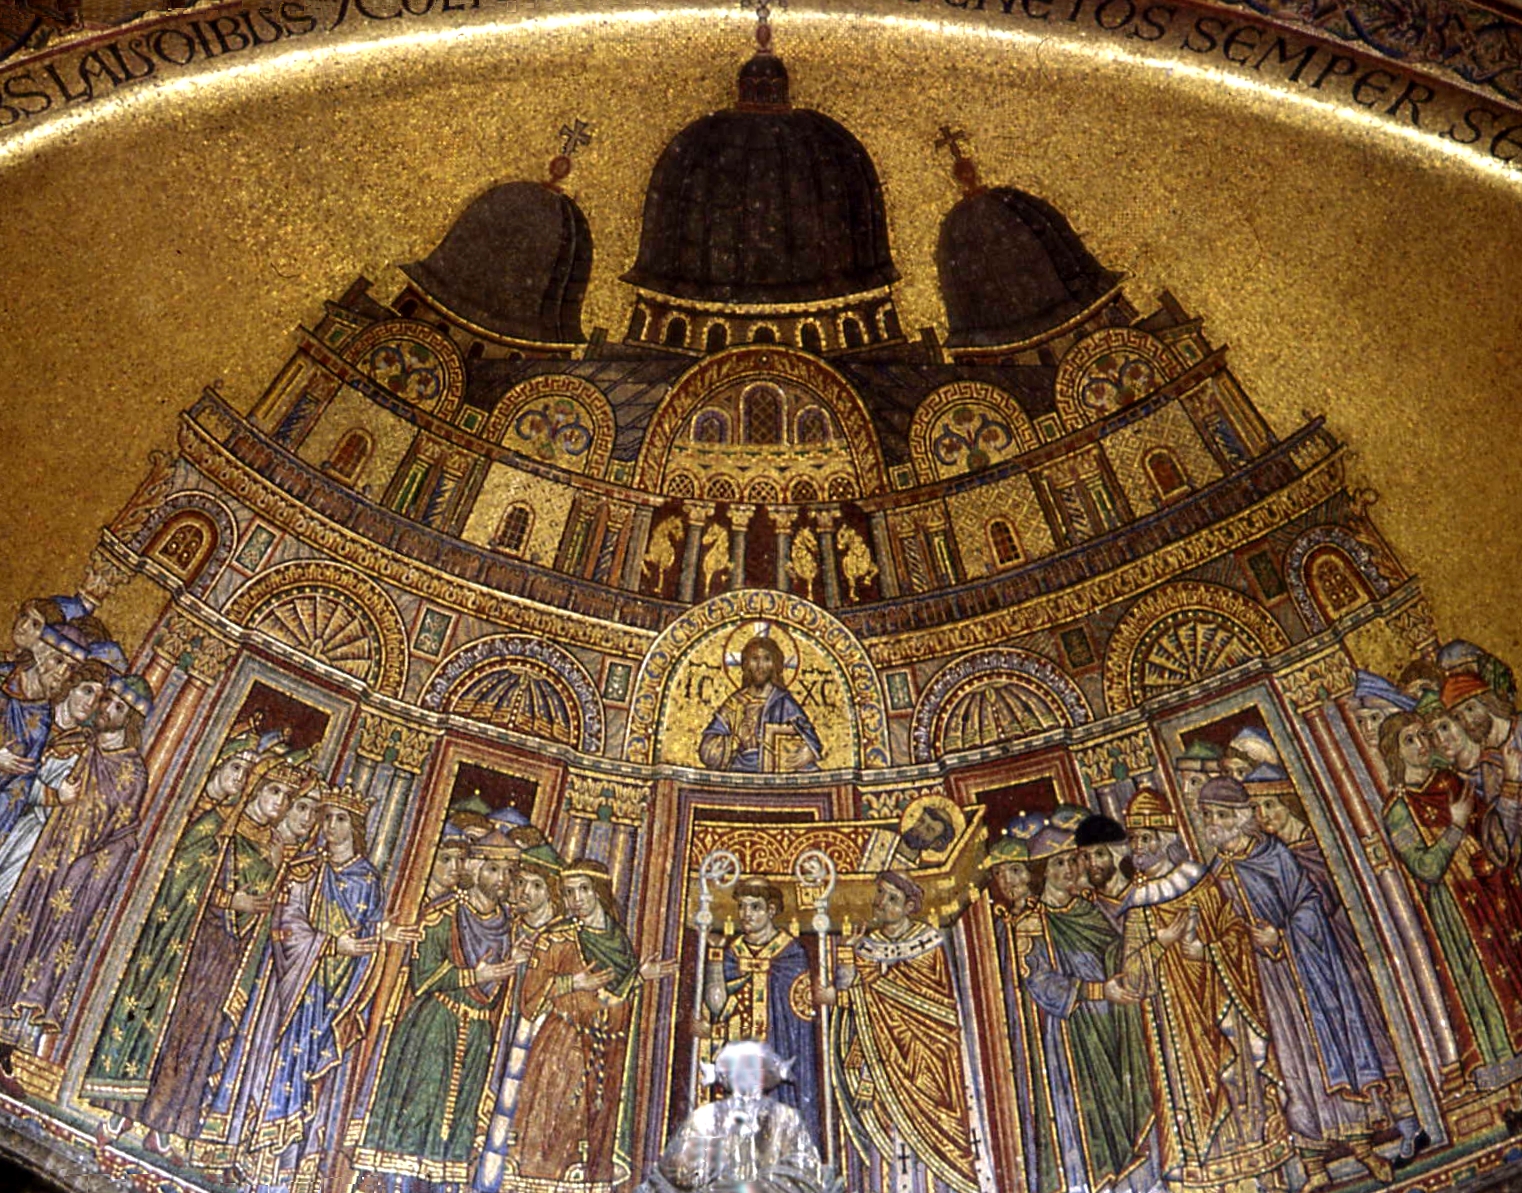 Mosaic of this church!